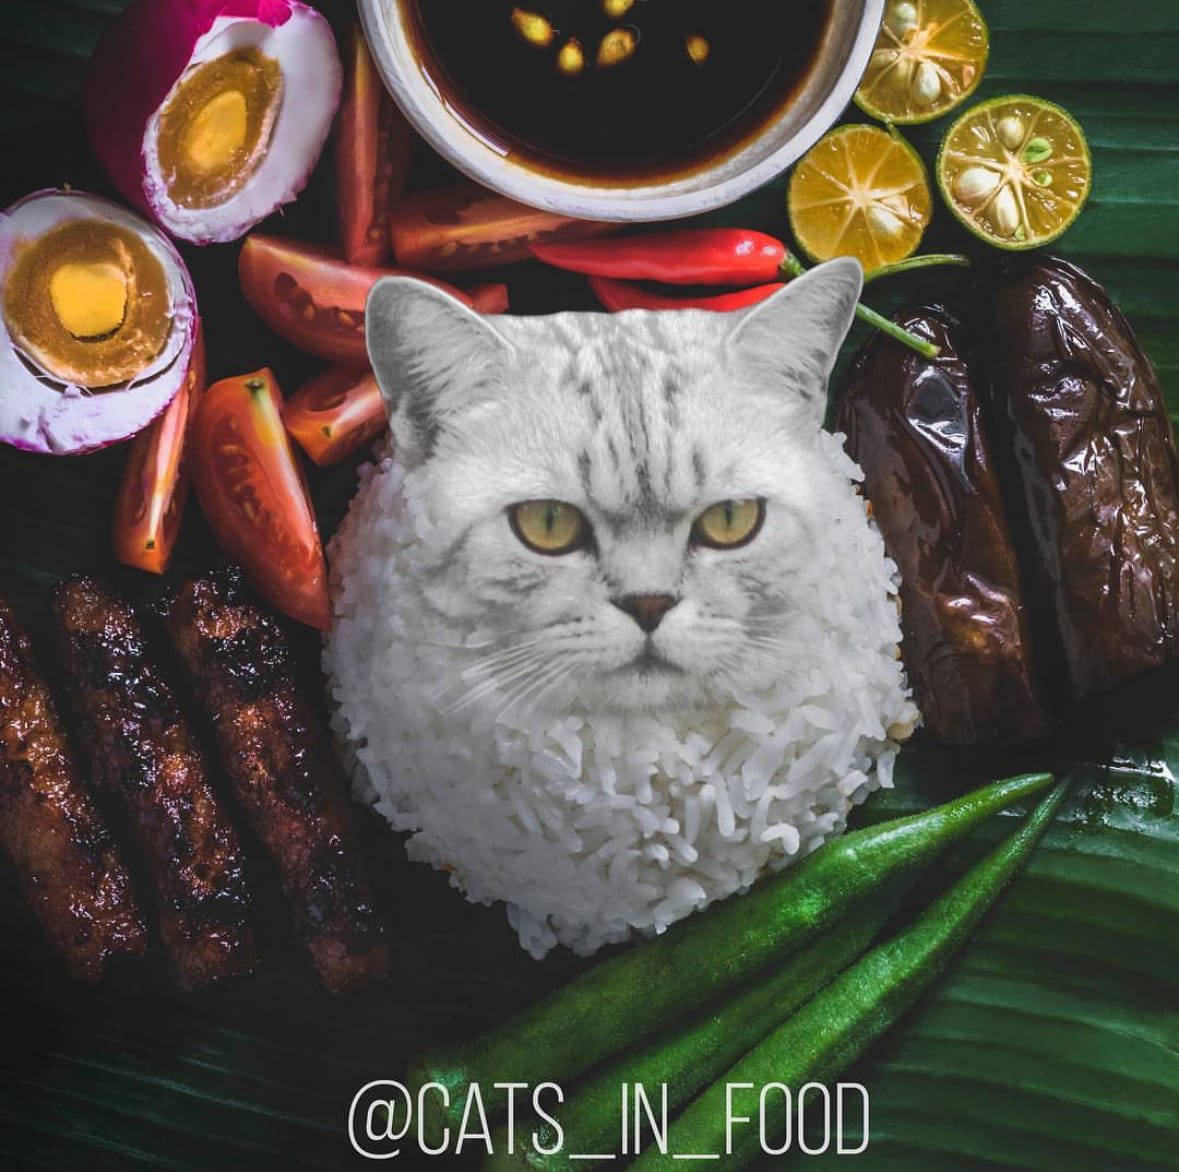 ภาพตัดต่อแมวผสมเข้ากับอาหารและขนม